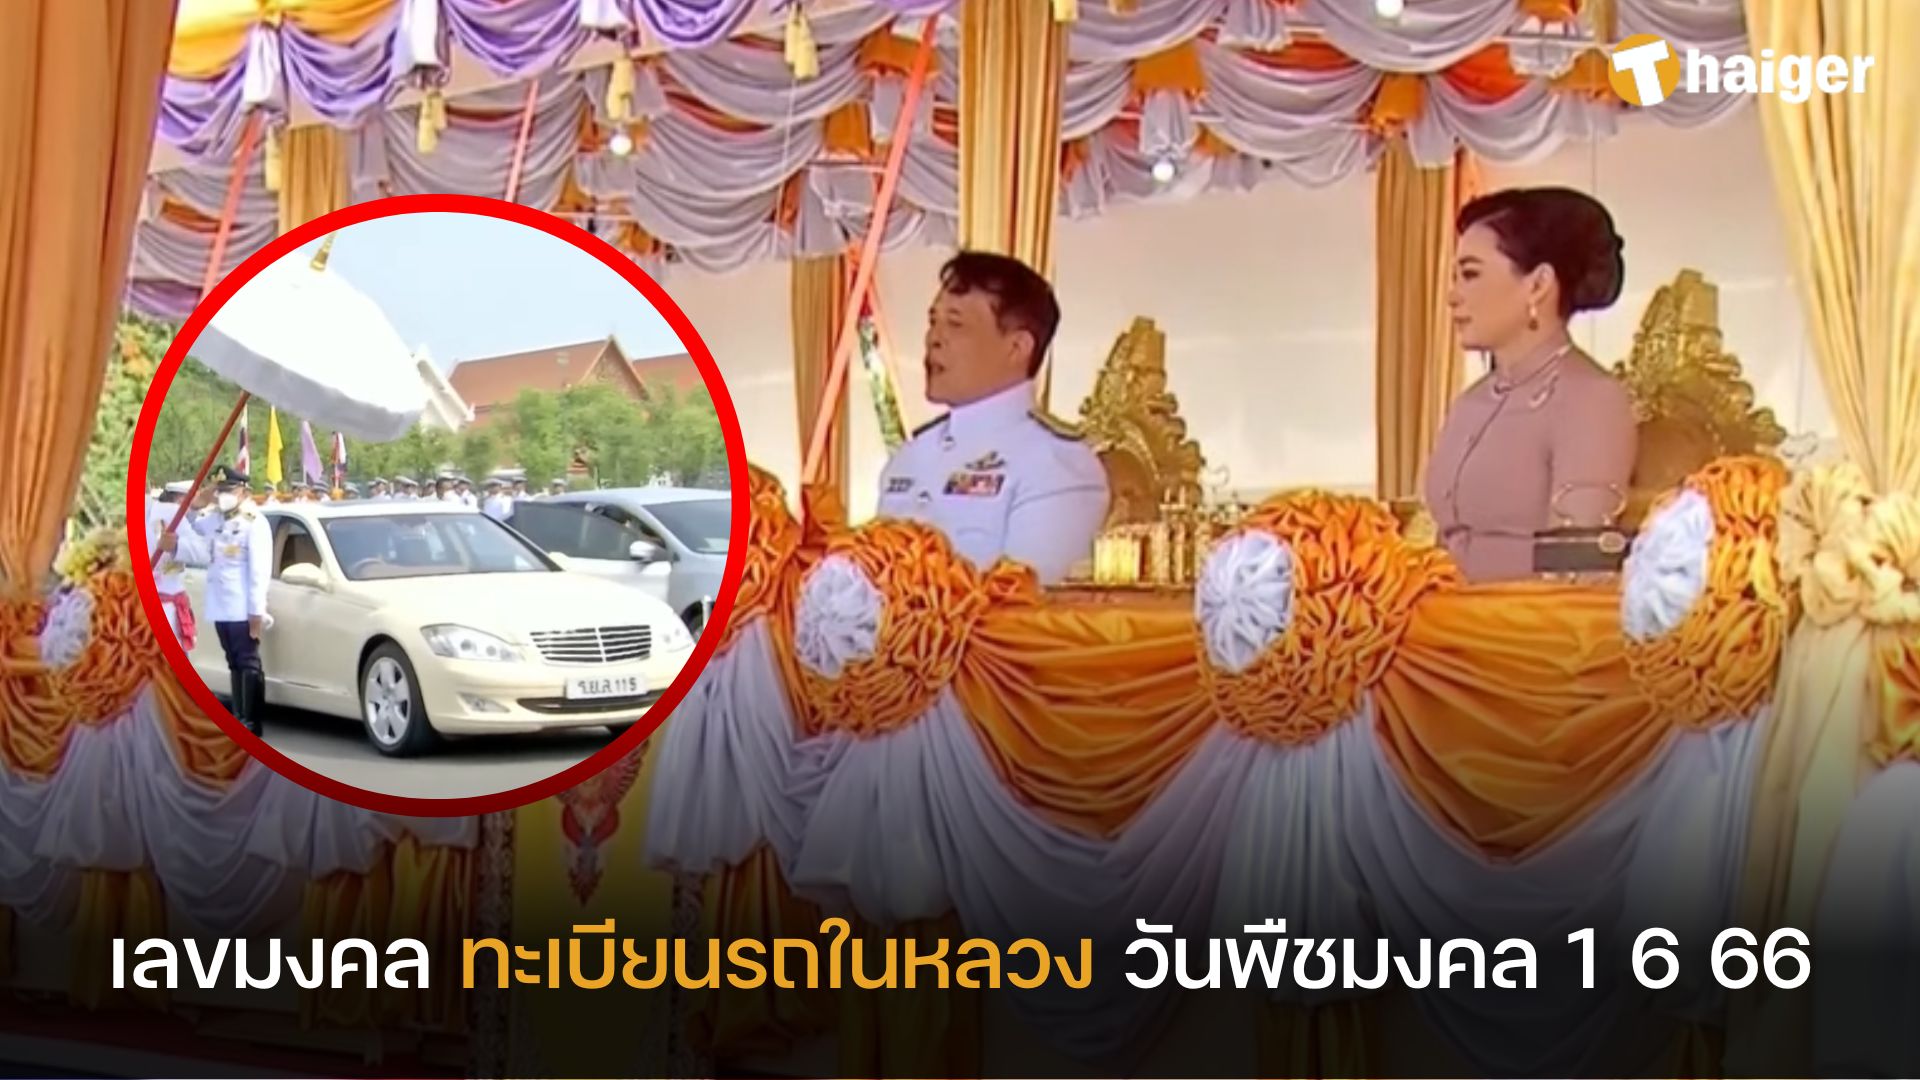 เลขเด็ดวันพืชมงคล ทะเบียนรถในหลวง เสด็จฯ พิธีจรดพระนังคัลแรกนาขวัญ |  Thaiger ข่าวไทย